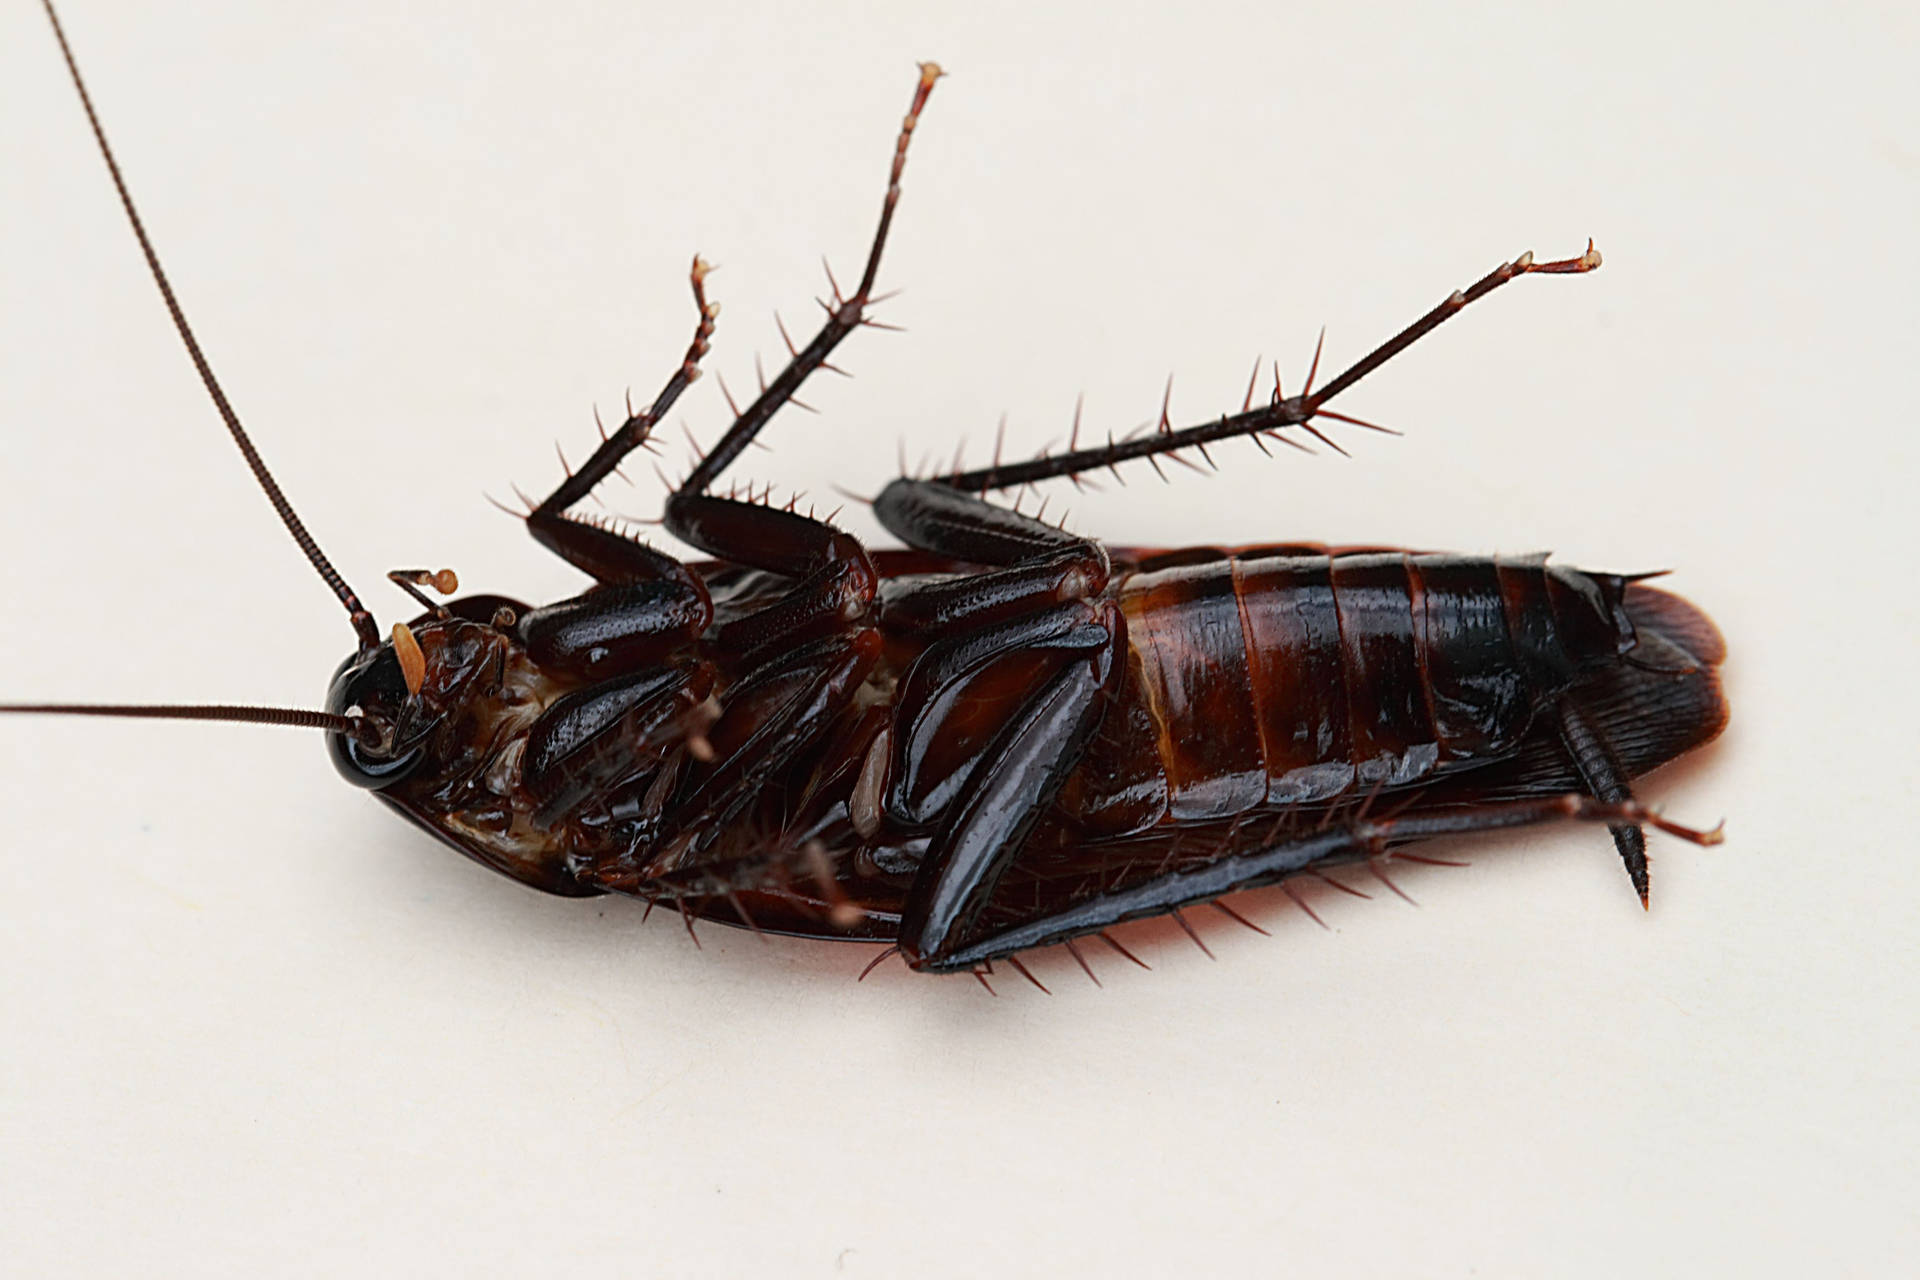 Dead Oriental Black Cockroach Wallpaper